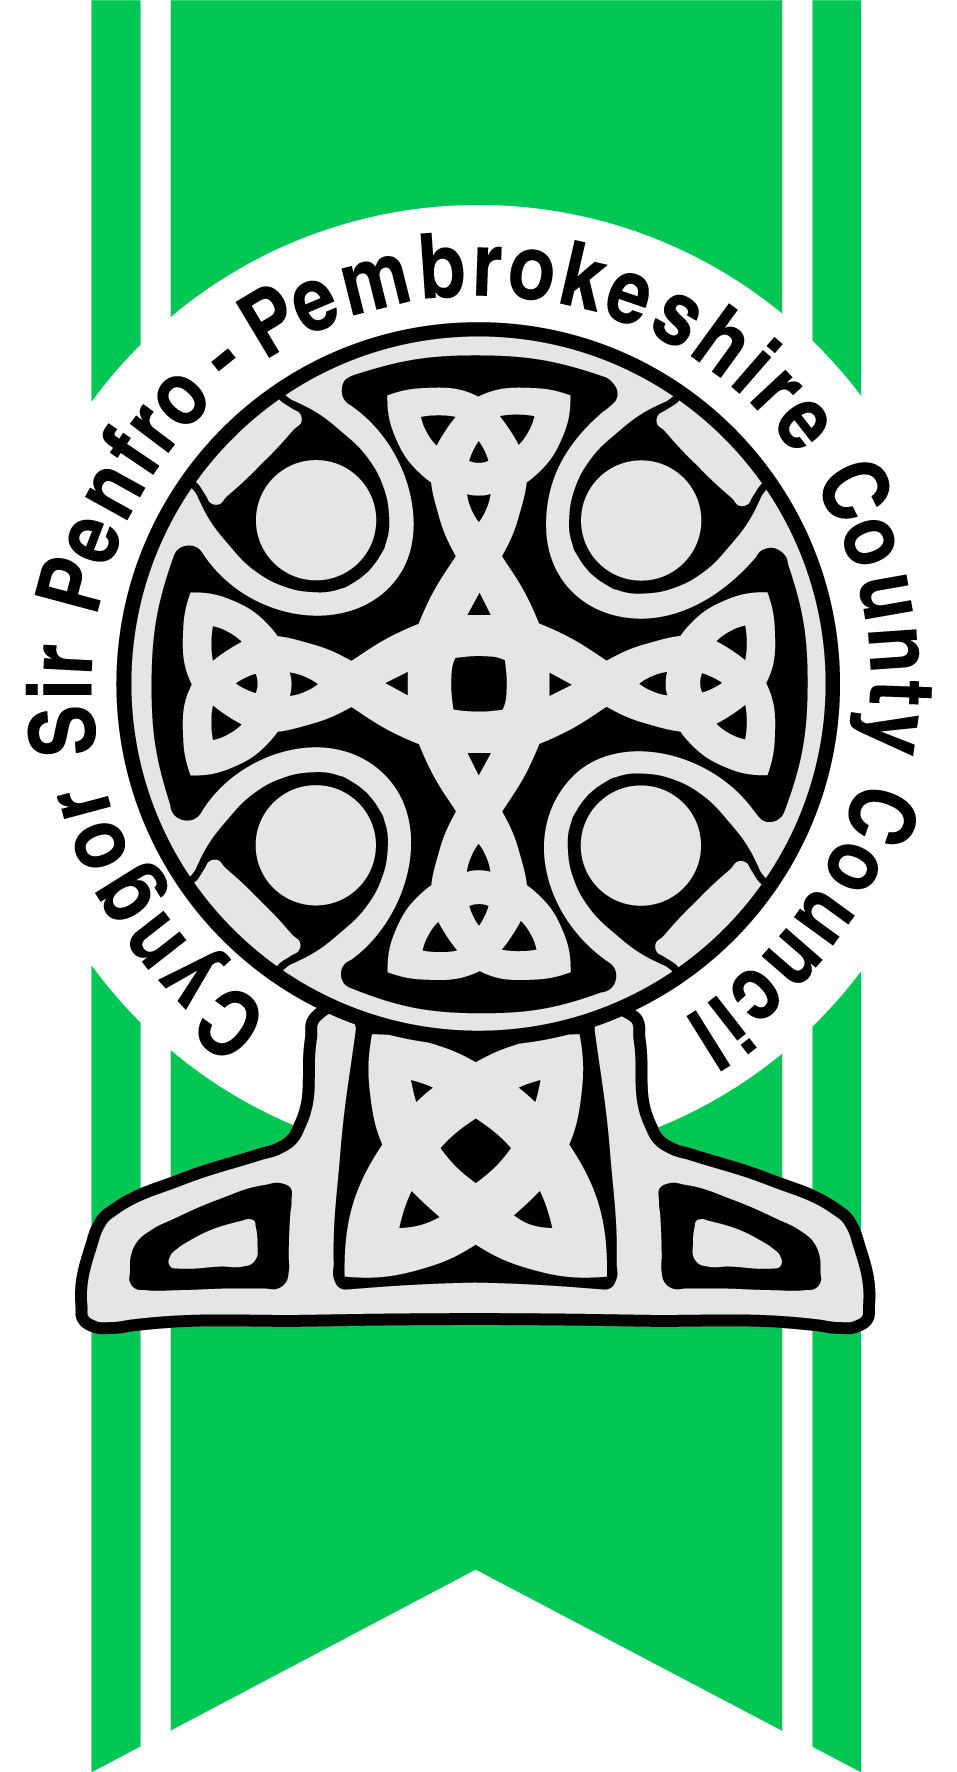 views-sought-on-council-tax-reduction-scheme-pembrokeshire-county-council